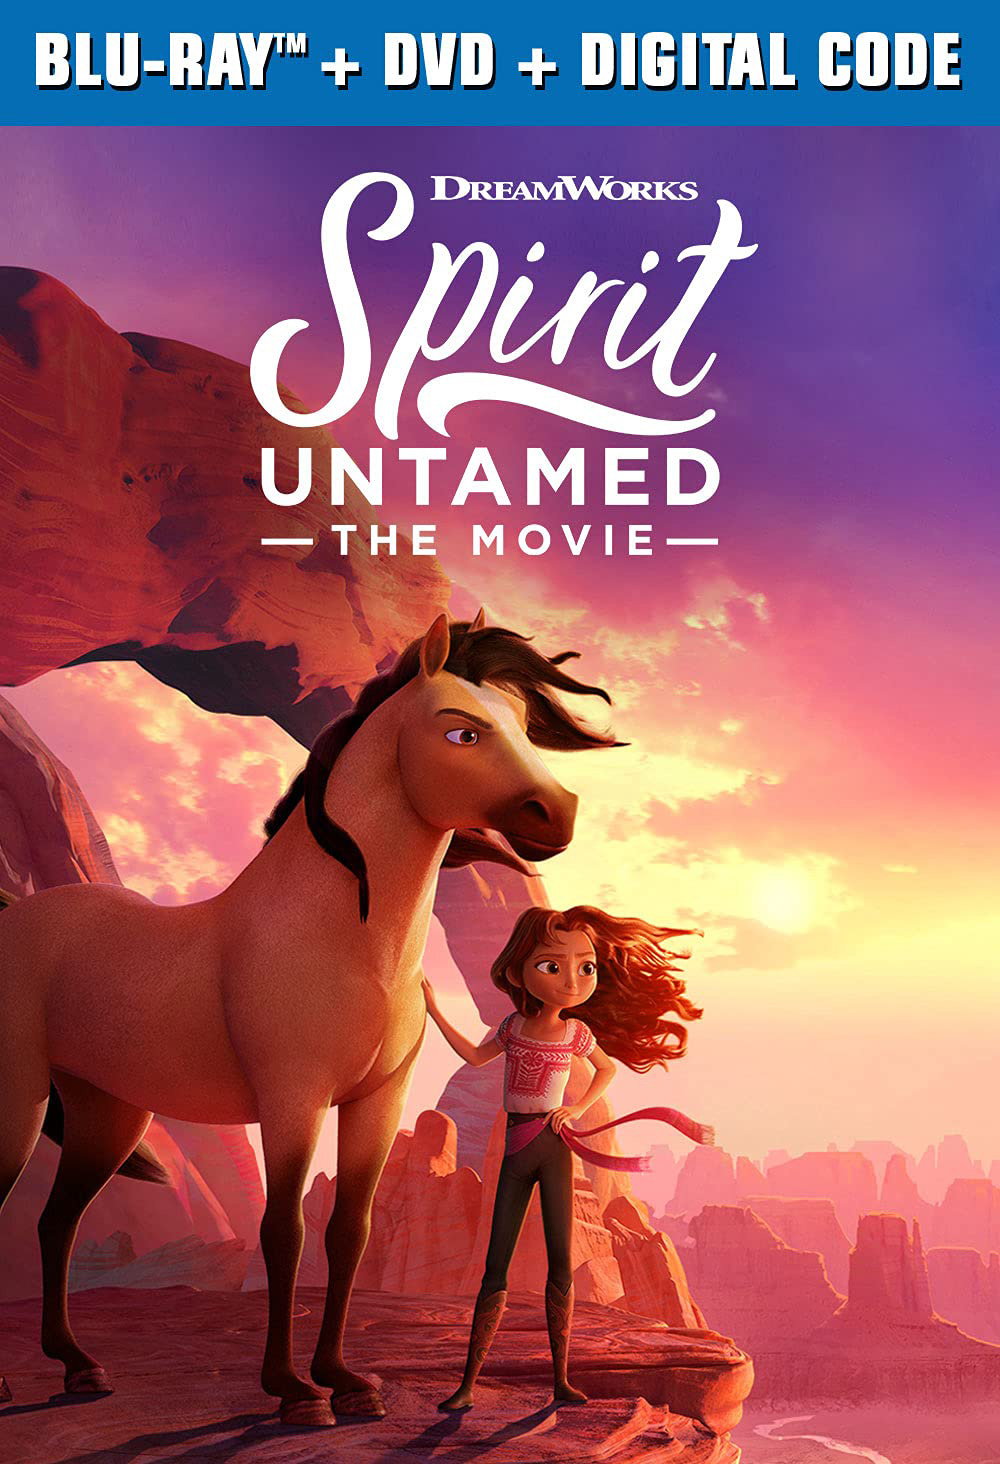 Spirit Untamed: The Movie